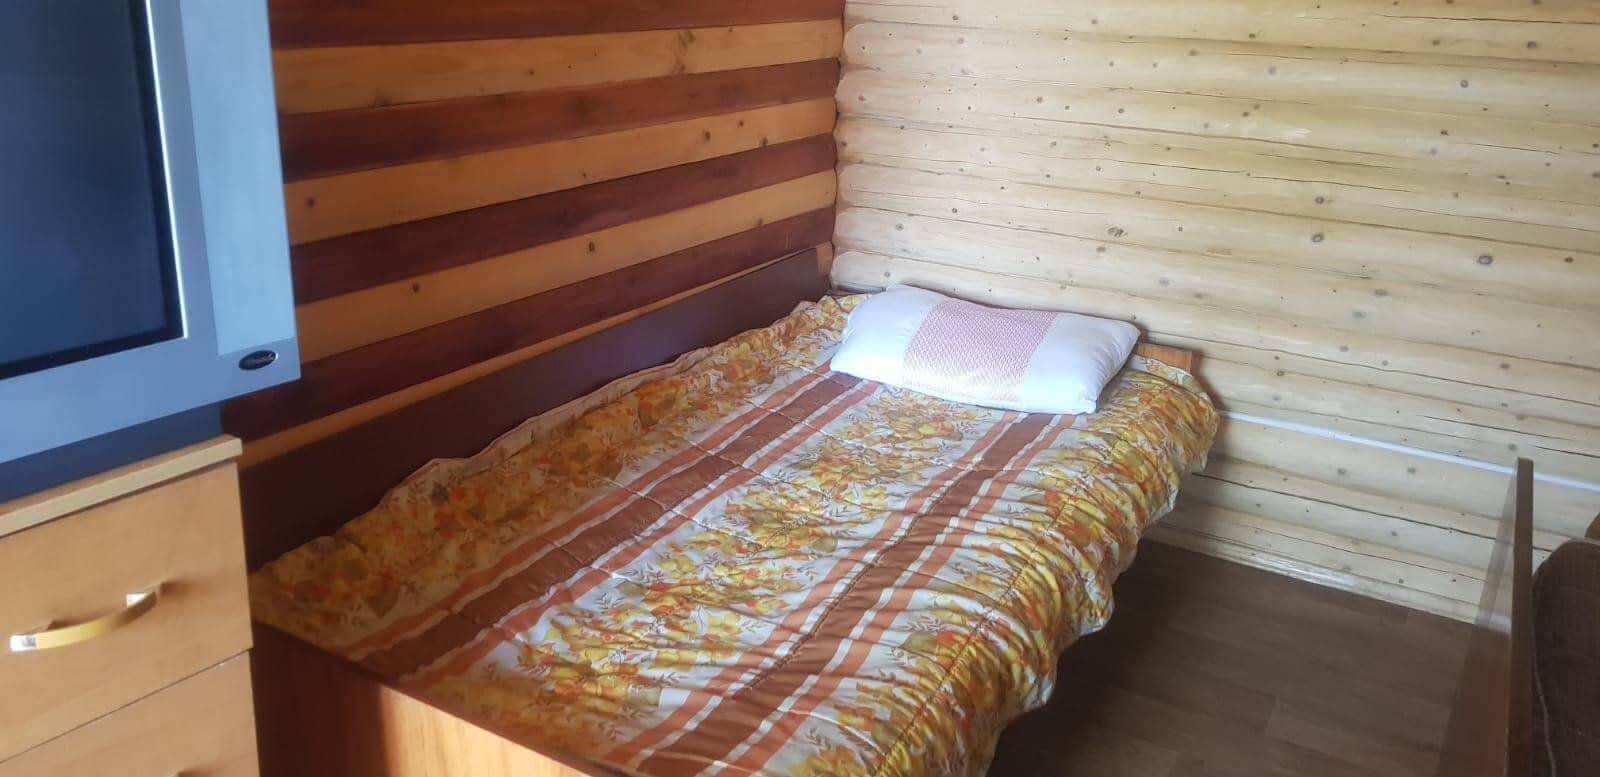 Дом Сова 8 мест 2 комнатный + кухня - Limpopo Travel в Казахстане